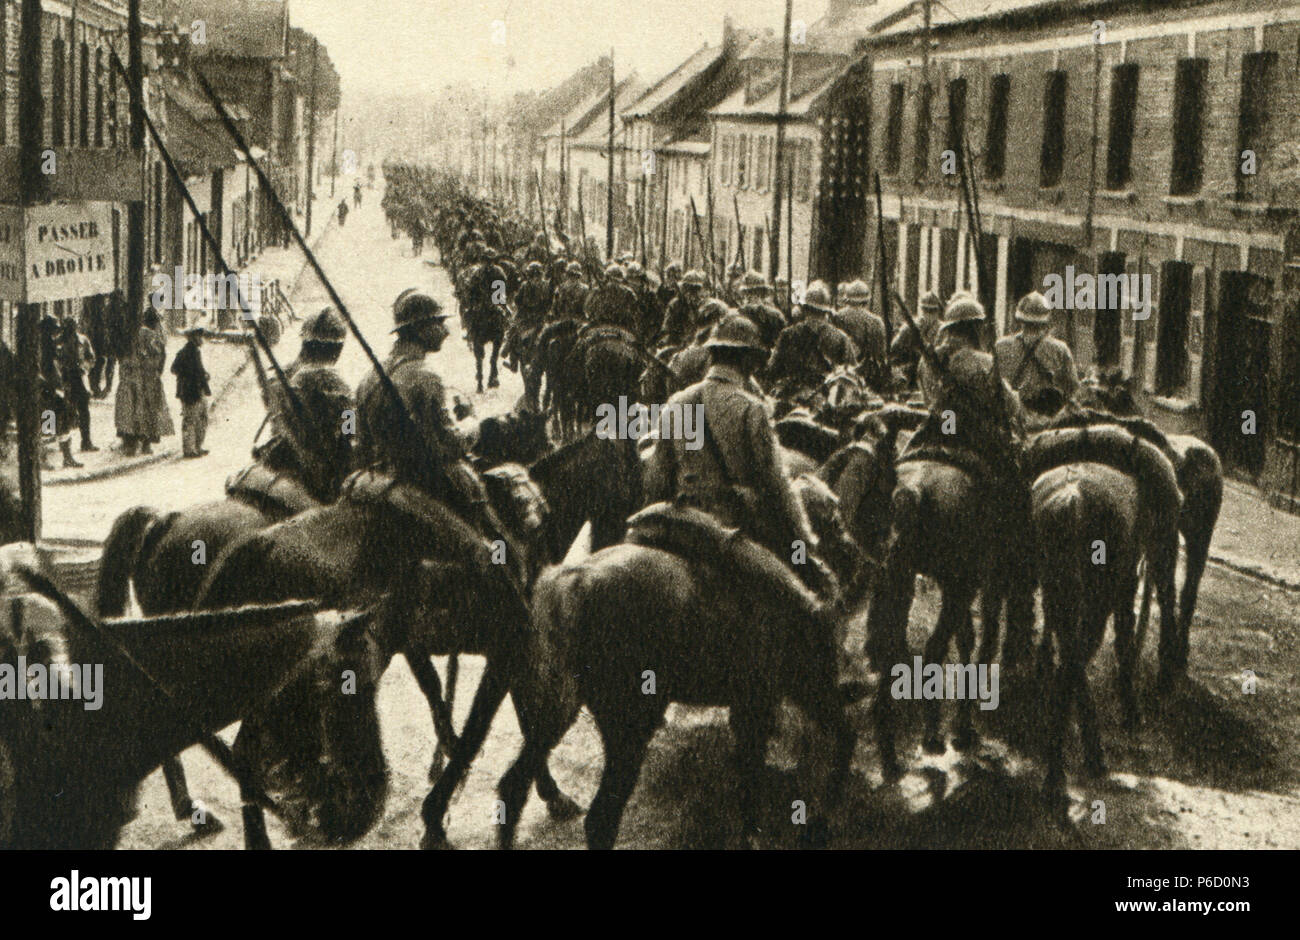 Cavalerie, cheval militaire, ww1, la première guerre mondiale, la première guerre mondiale Banque D'Images